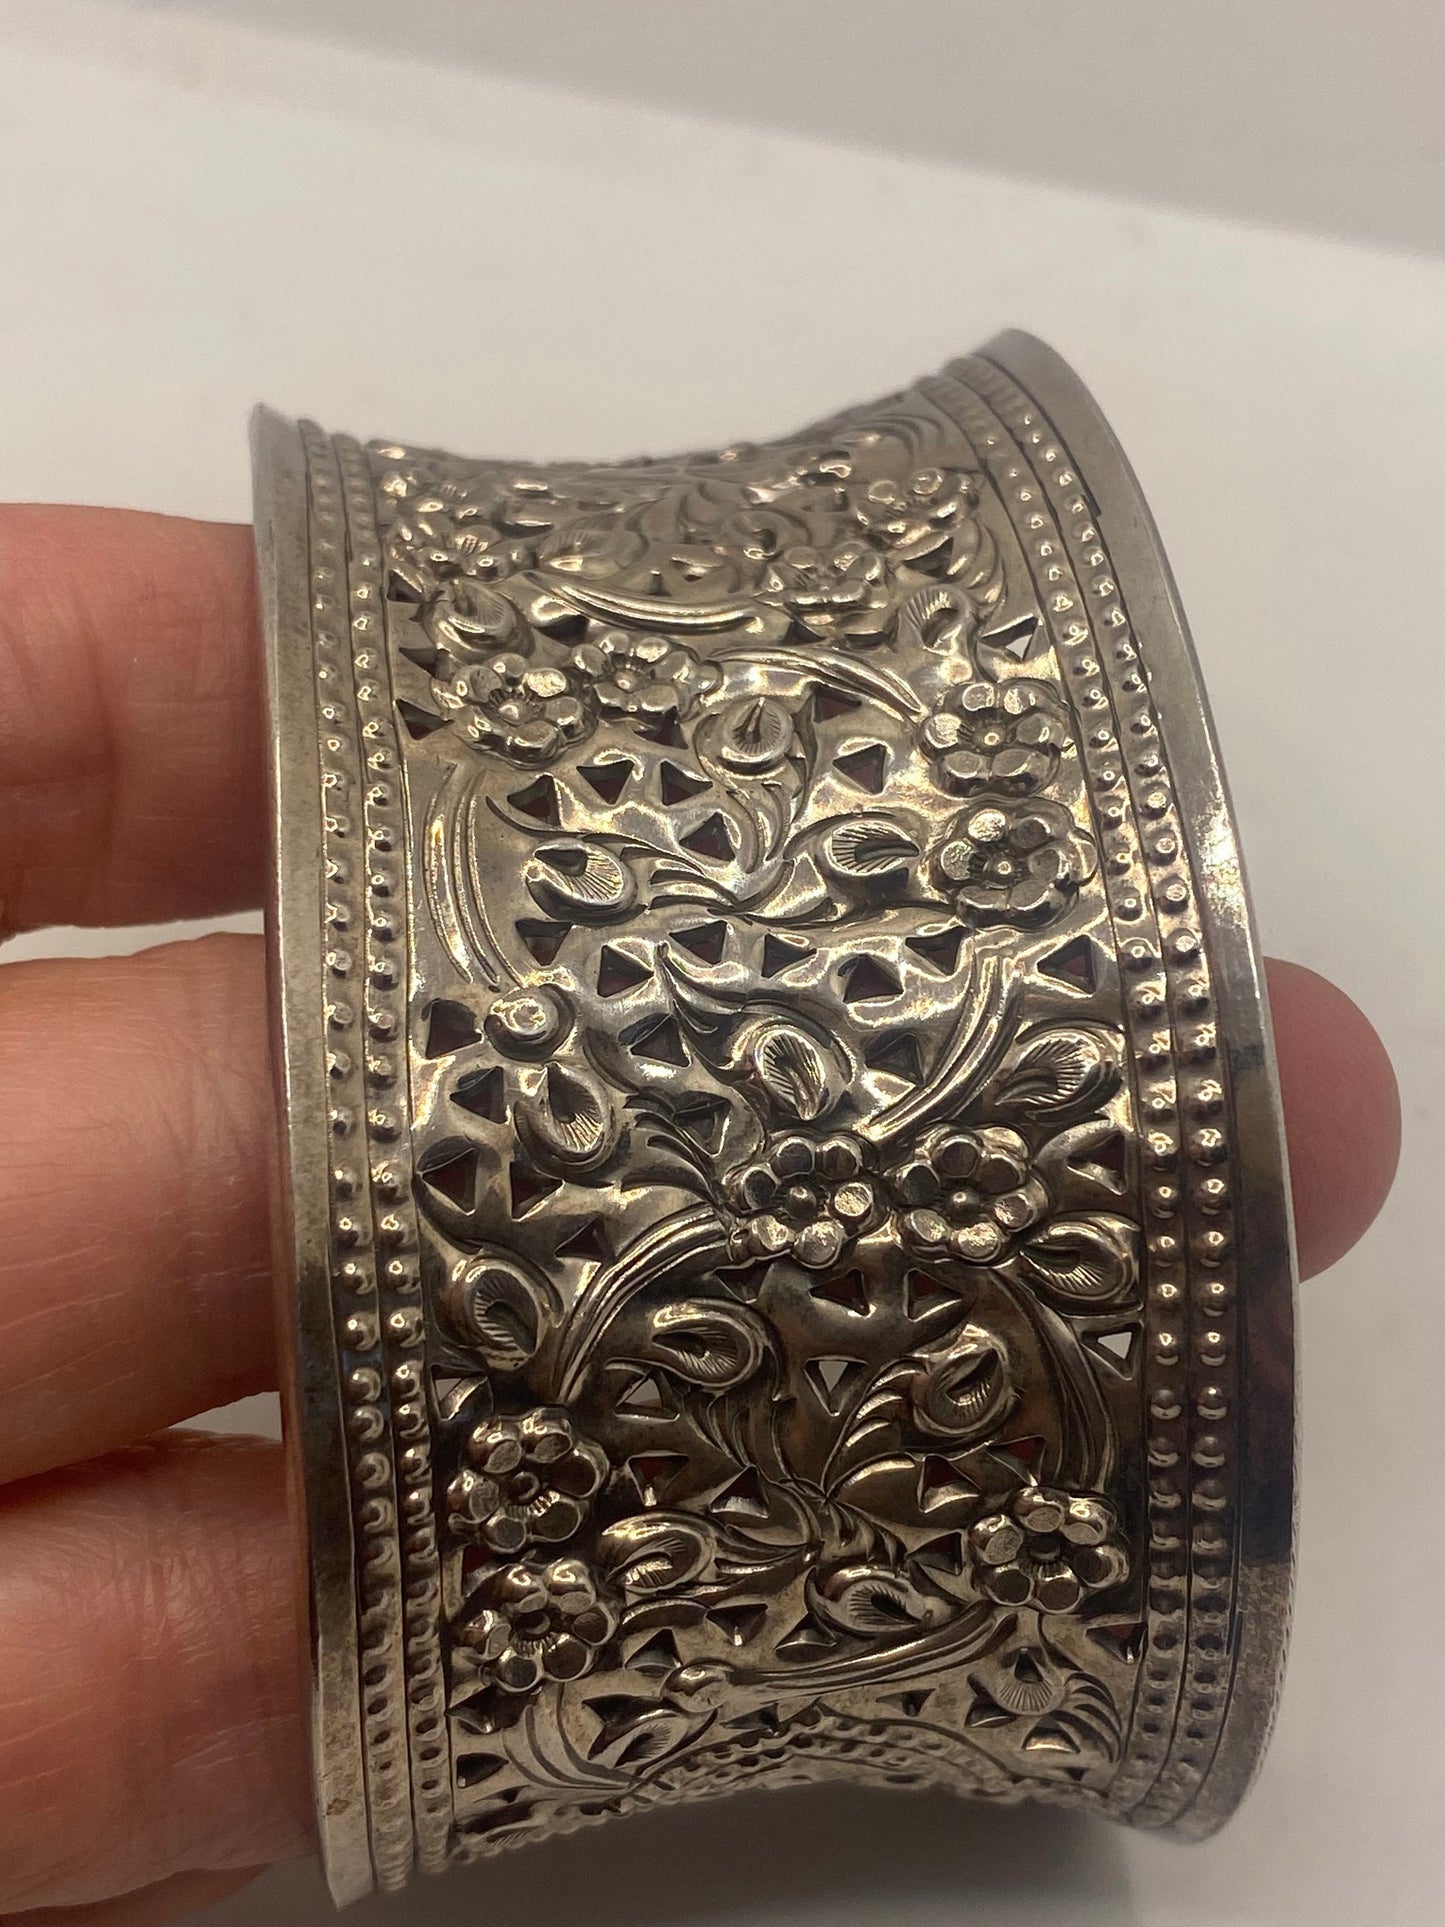 Vintage Bangle Cuff Bracelet 925 Sterling Silver